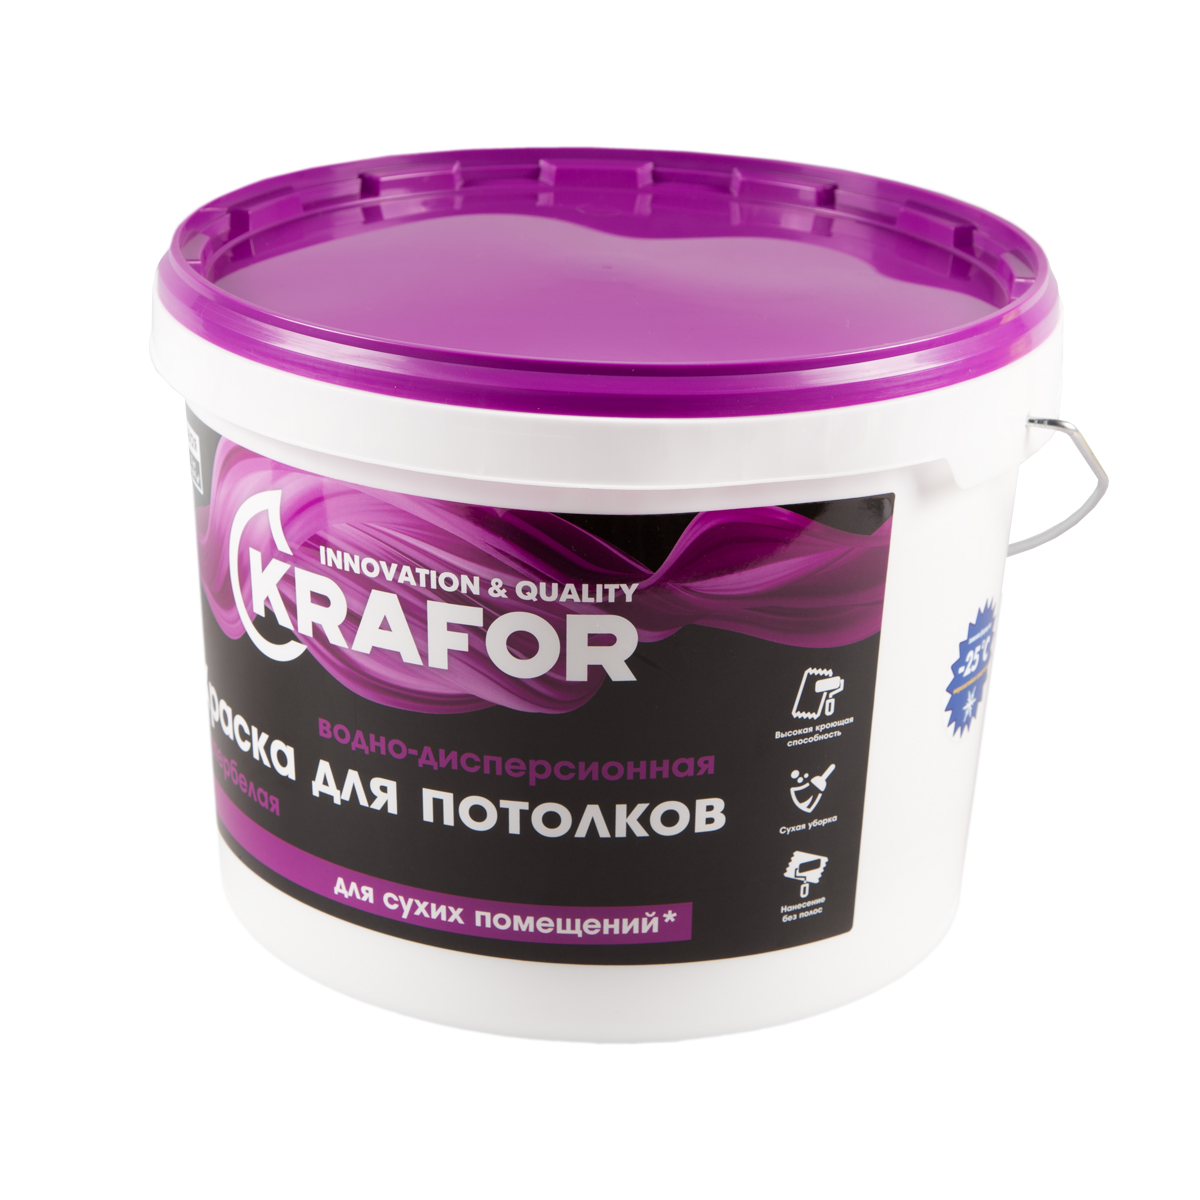 Краска в/д  для потолков супербелая 14 кг (1) "krafor"   (фиолет.)